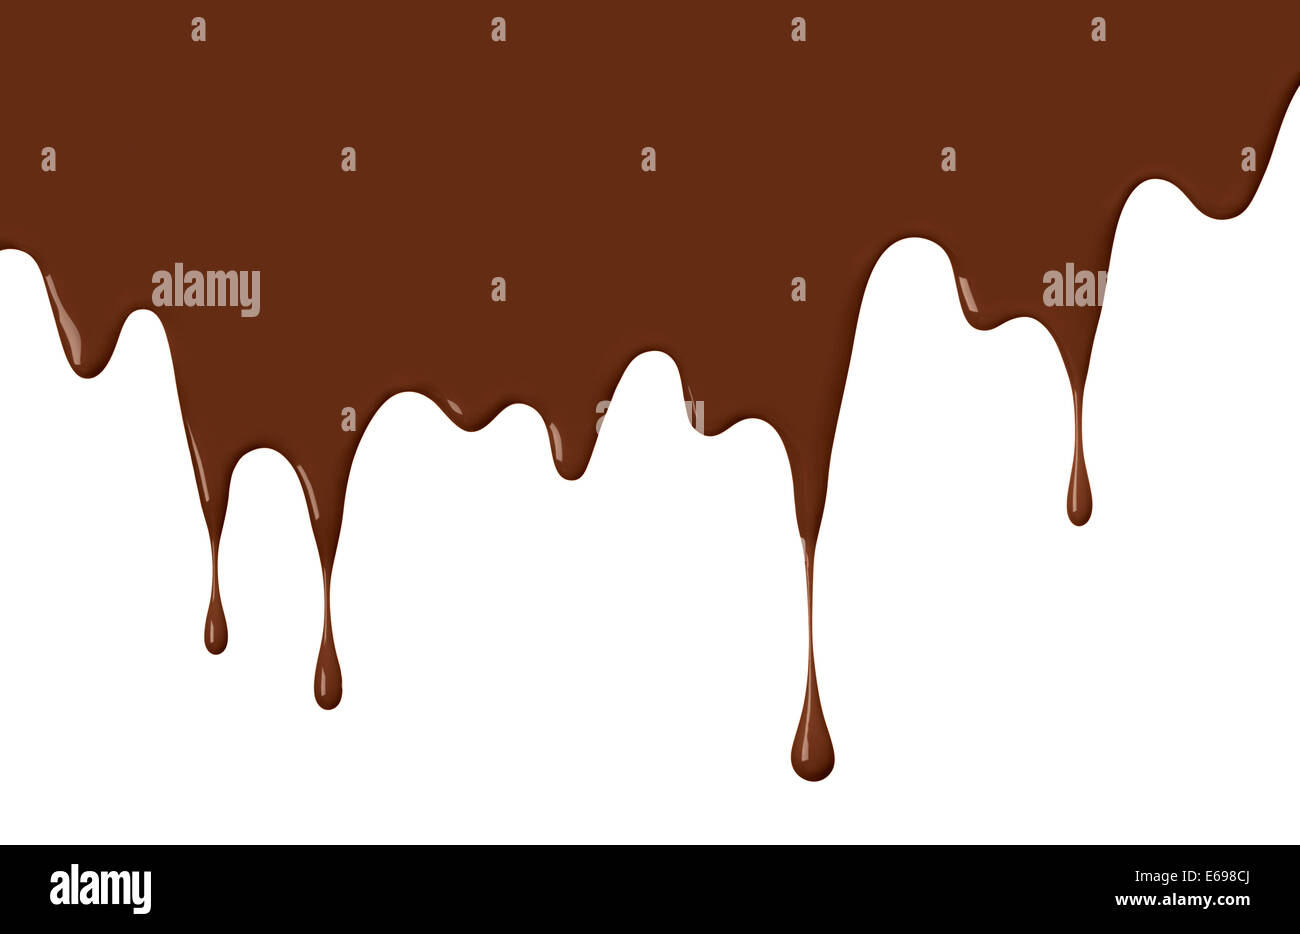 Schokolade oder braune Farbe tropft, verwenden als Hintergrund Stockfoto